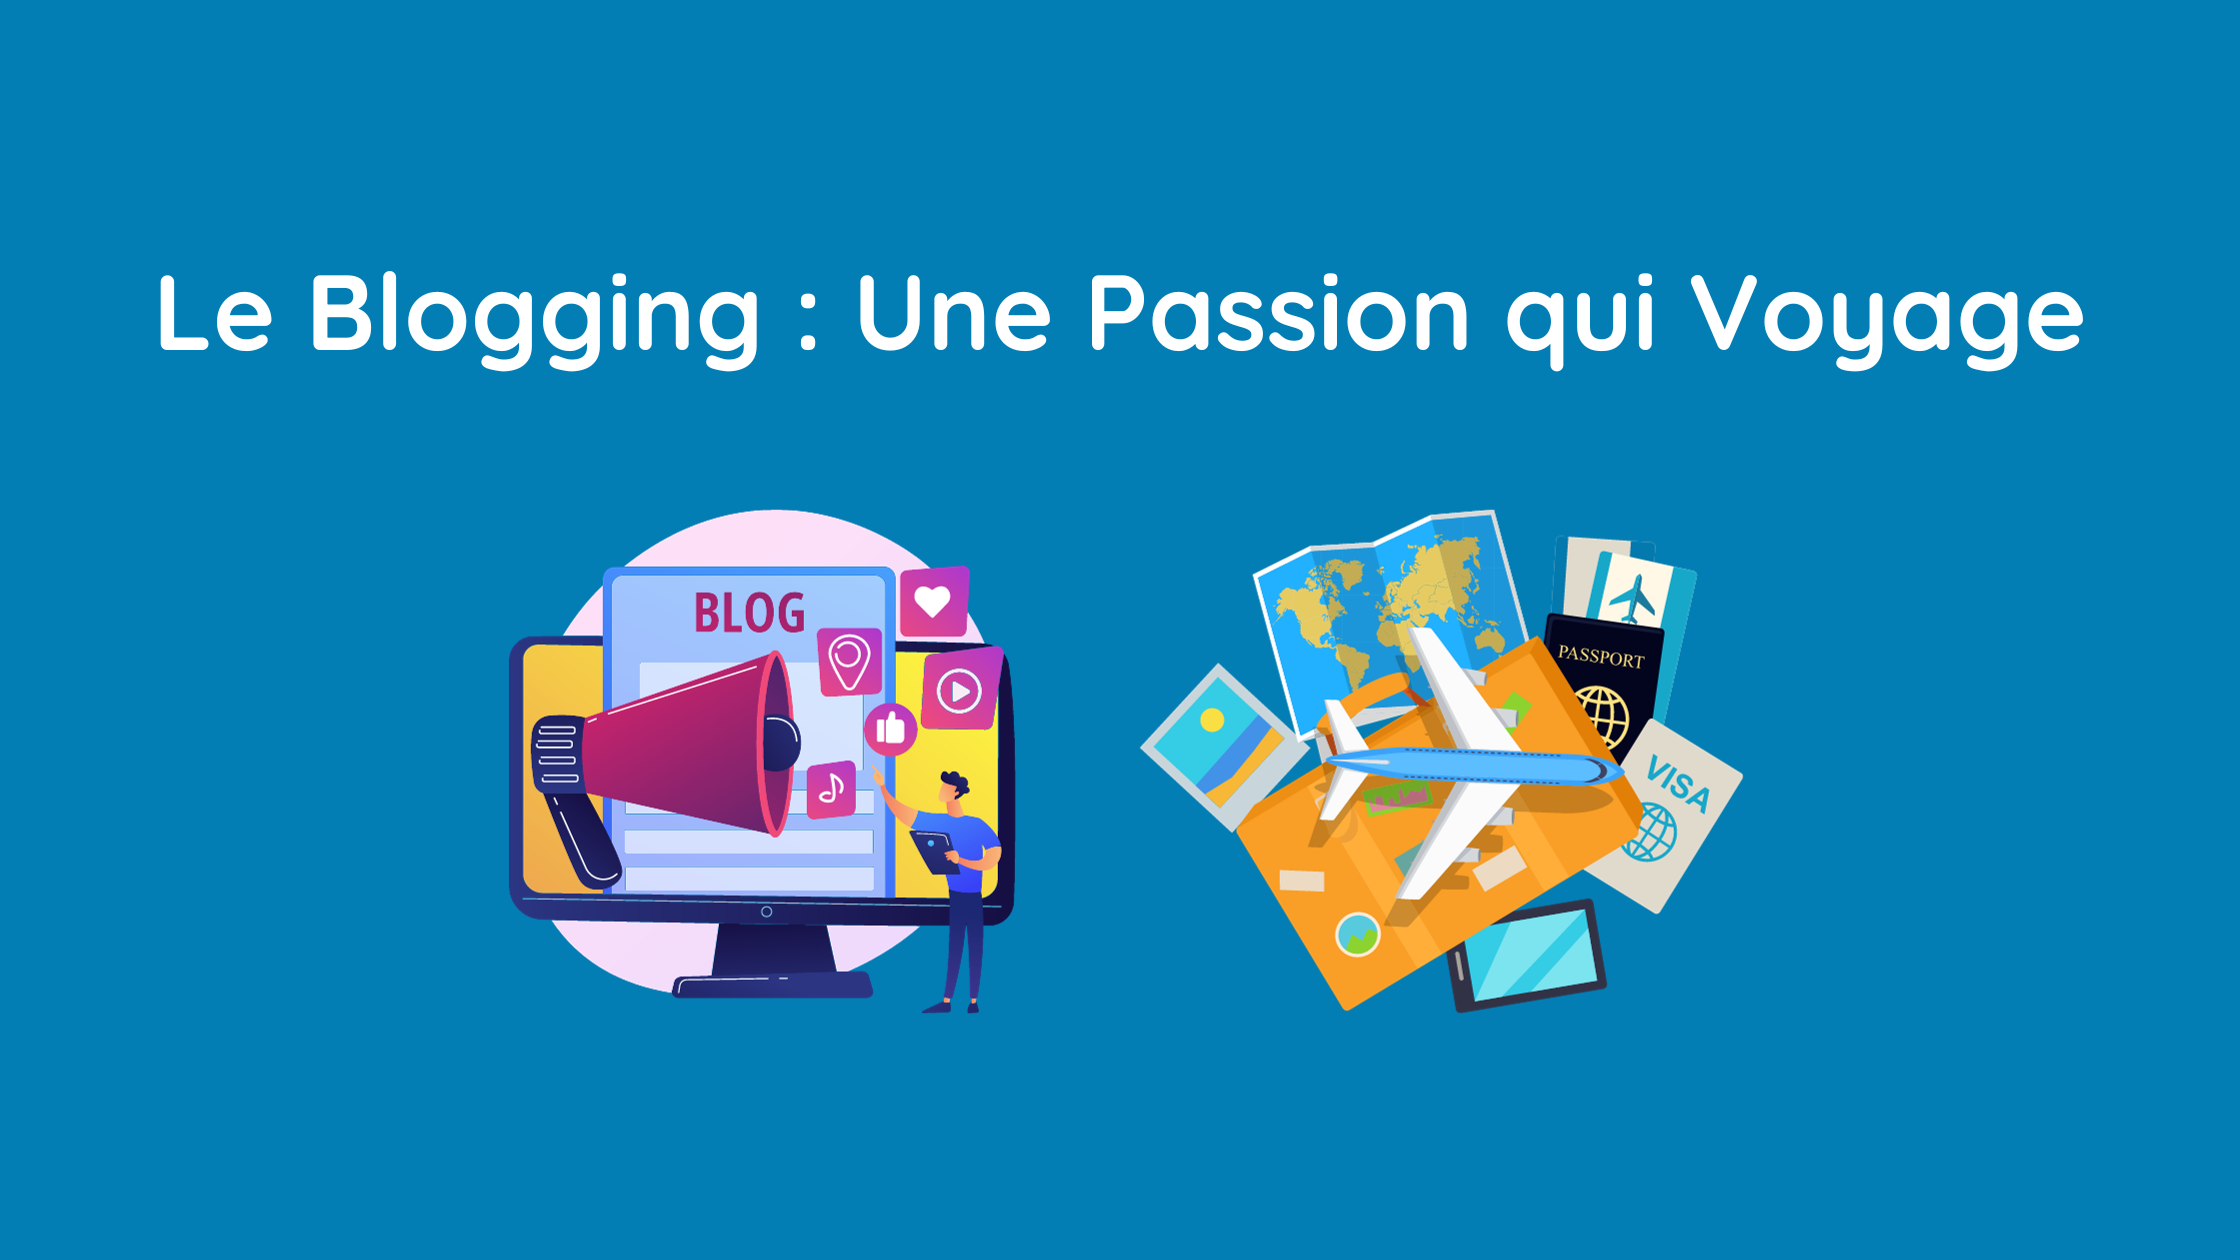 Lire la suite à propos de l’article Le Blogging : Une Passion qui Voyage !